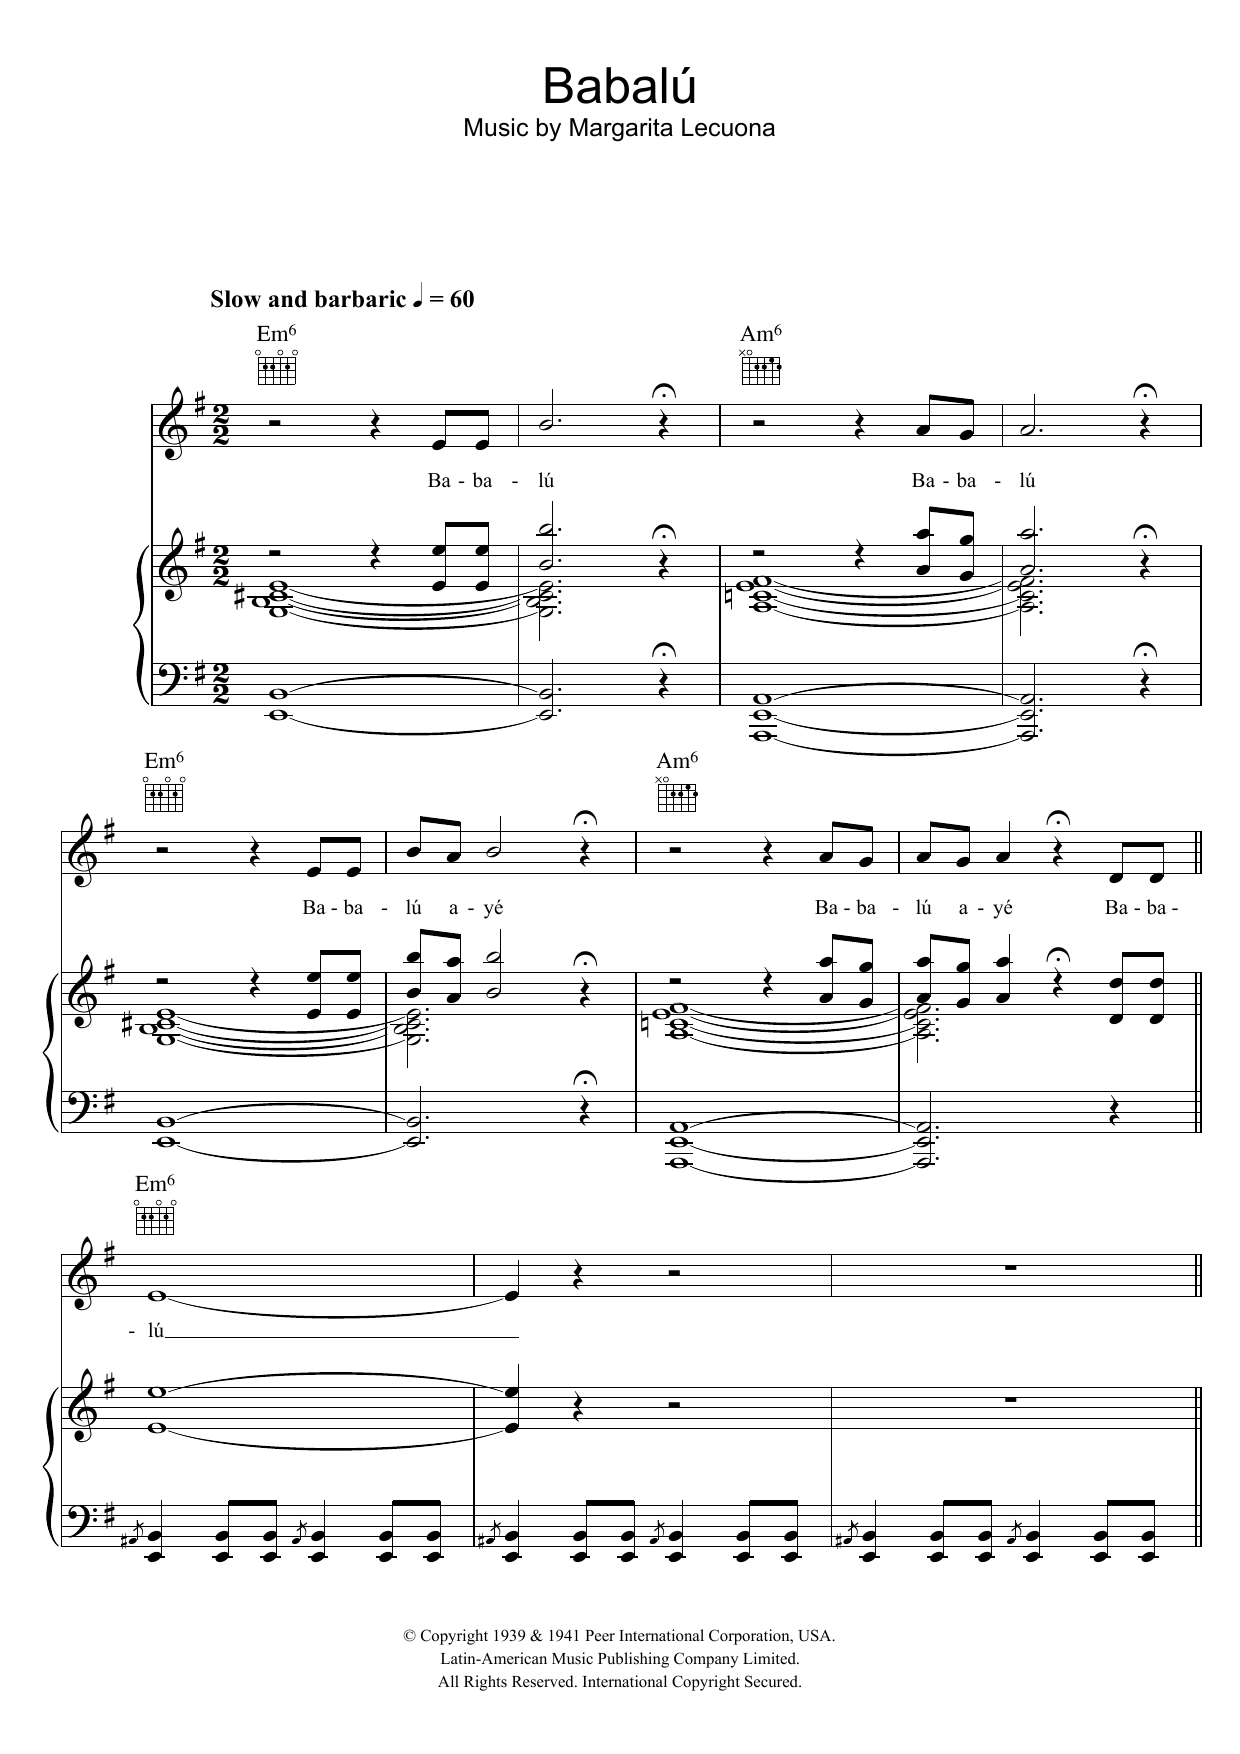 Margarita Lecuona Babalu Sheet Music Notes & Chords for Melody Line, Lyrics & Chords - Download or Print PDF